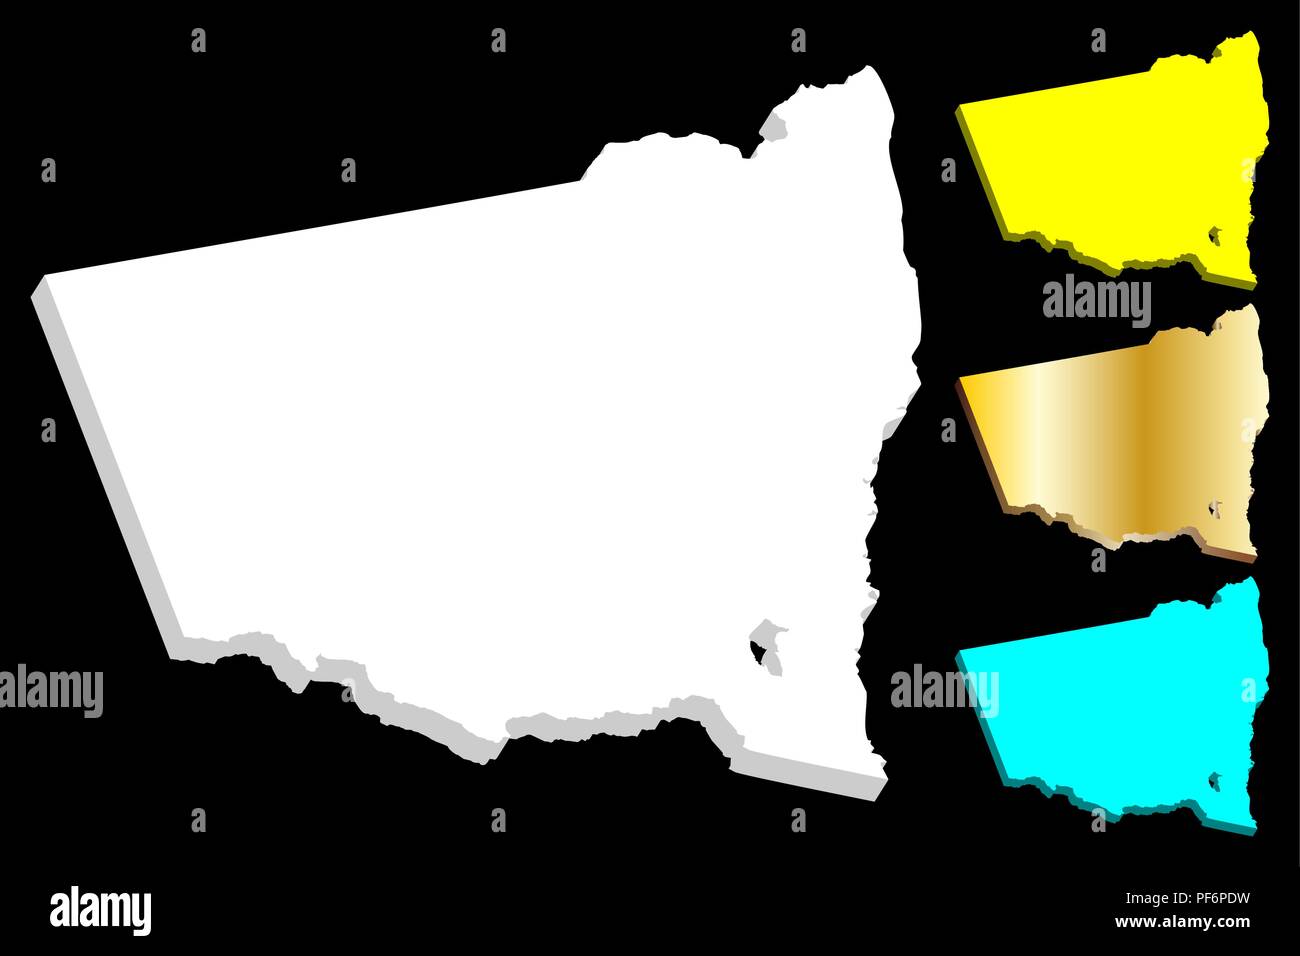 Mappa 3D del Nuovo Galles del Sud (Stati australiani e territori, NSW) - bianco, giallo, blu e oro - illustrazione vettoriale Illustrazione Vettoriale